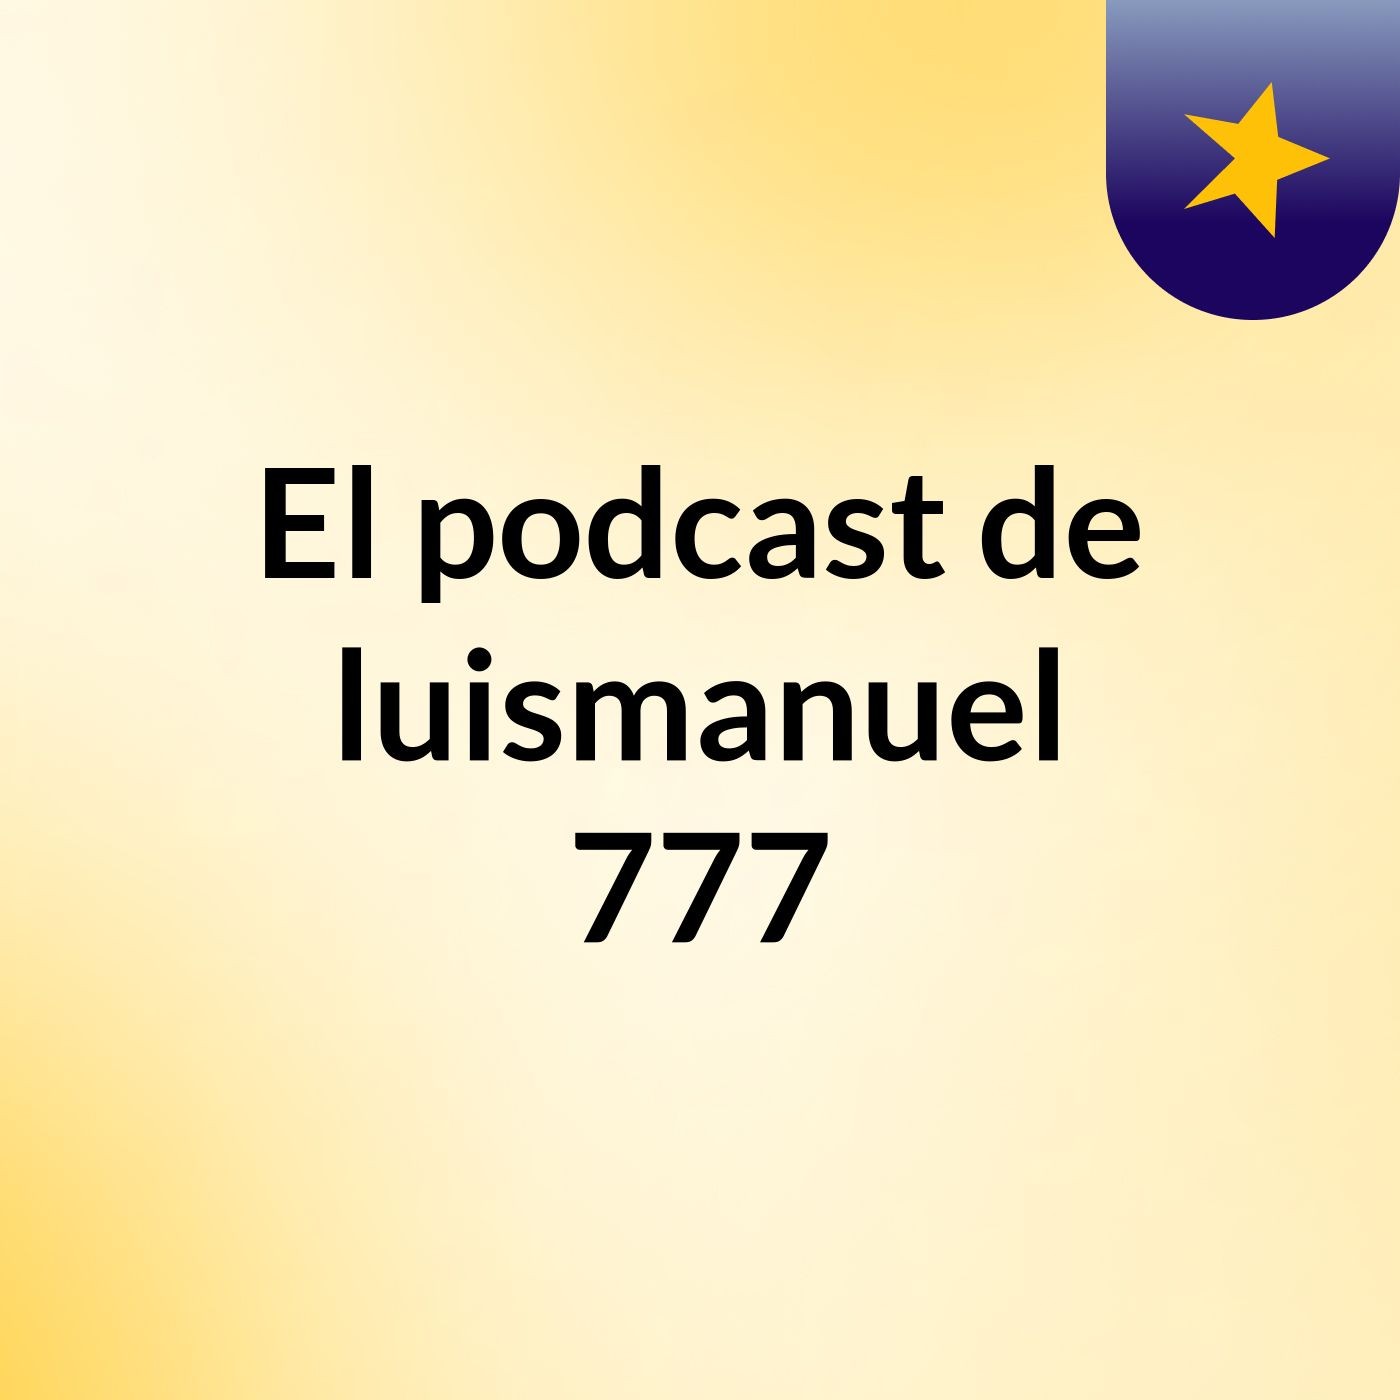 El podcast de luismanuel 777